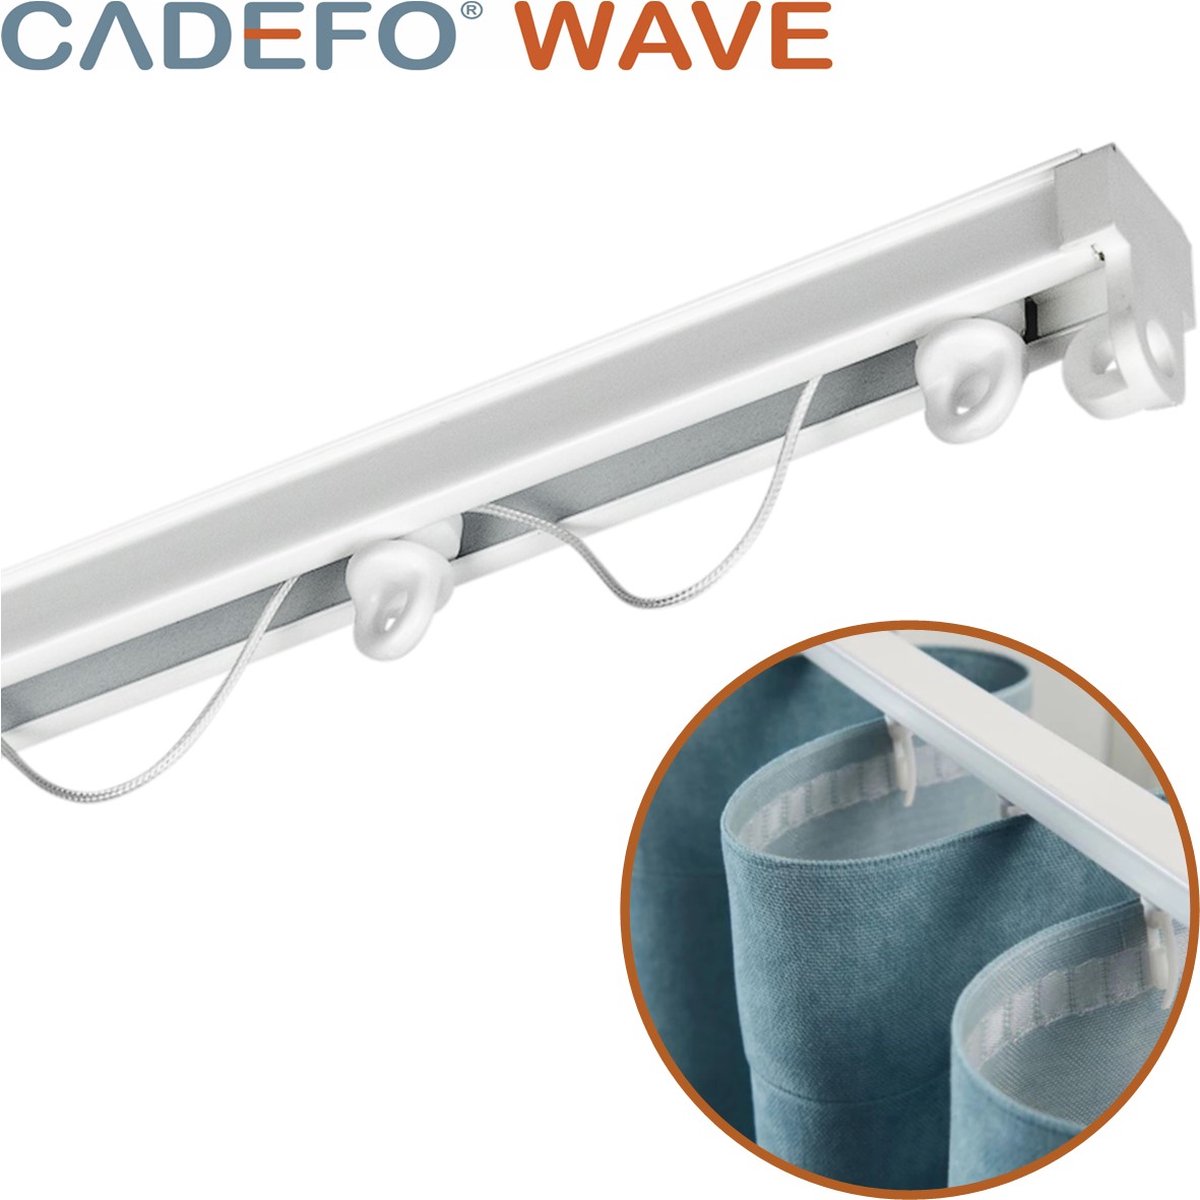 CADEFO WAVE (351 - 400 cm) Gordijnrails - Compleet op maat! - UIT 1 STUK - Leverbaar tot 6 meter - Plafondbevestiging - Lengte 358 cm